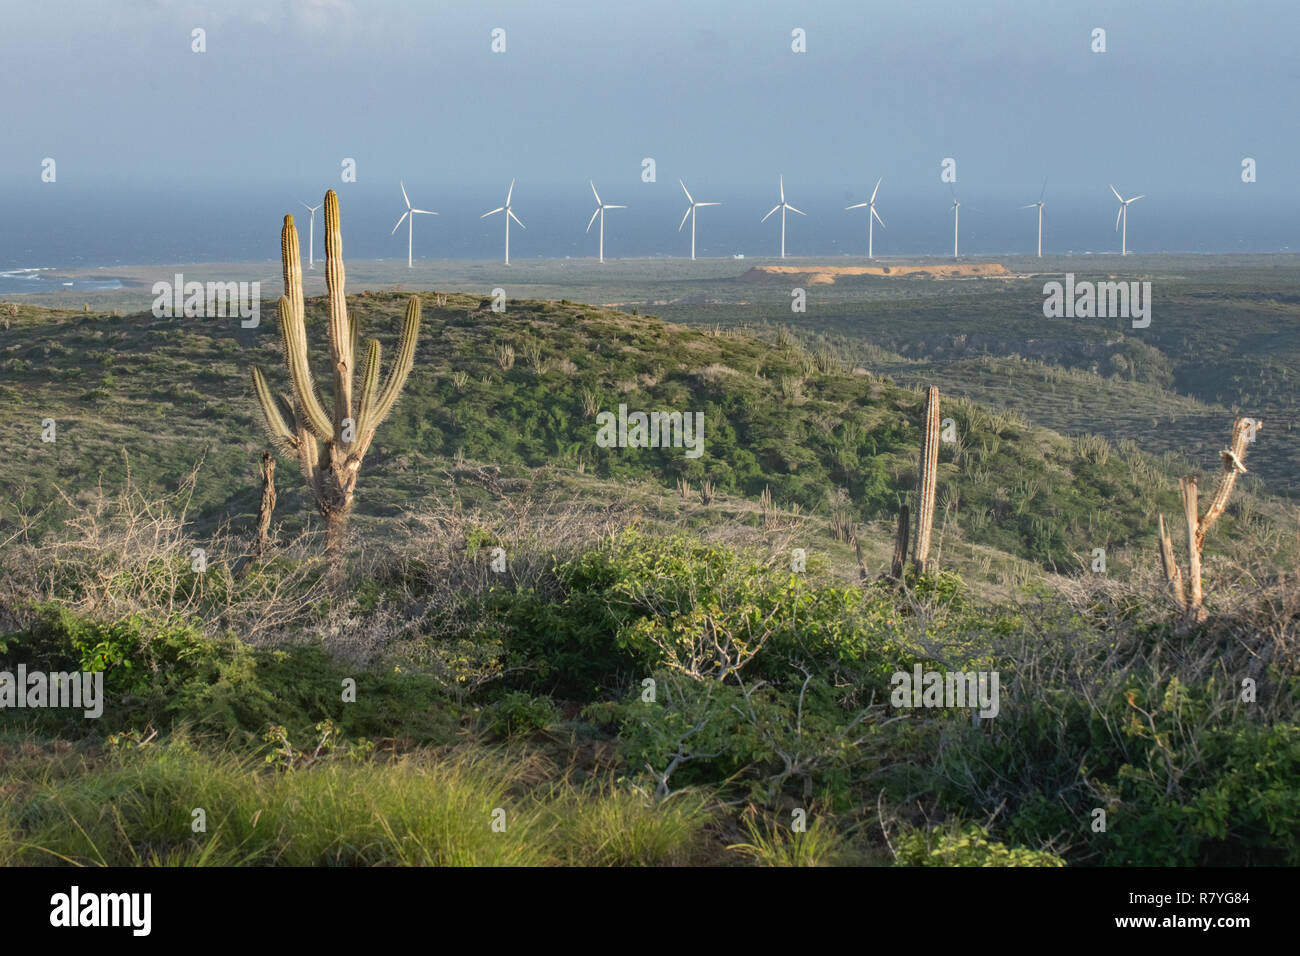 Windmill Farm Aruba im Nationalpark "Arikok" - Nachhaltigkeit Aufwand aus Windkraft - Windkraftanlagen eines Windparks erneuerbare Energien zu erhöhen, Formular Stockfoto